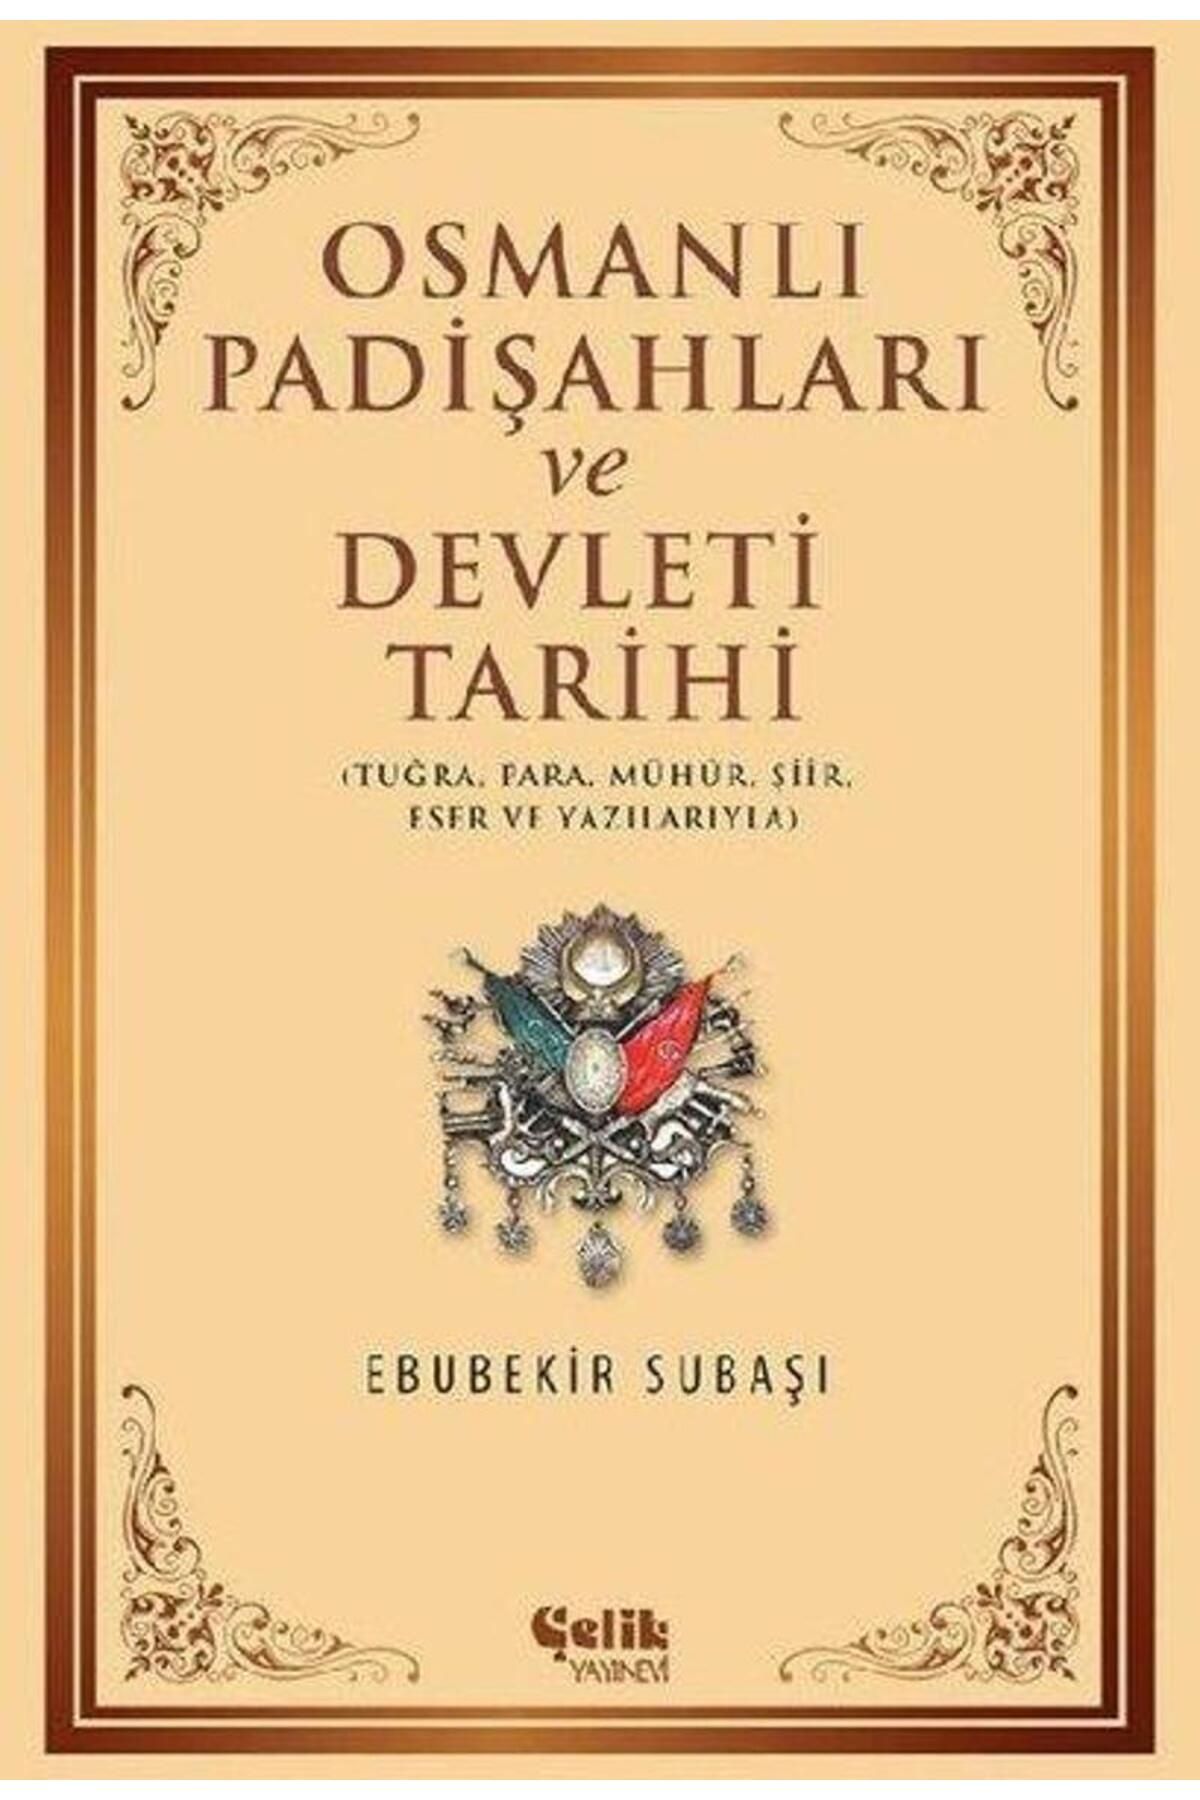 Çelik Yayınevi Osmanlı Padişahları ve Dvelet Tarihi